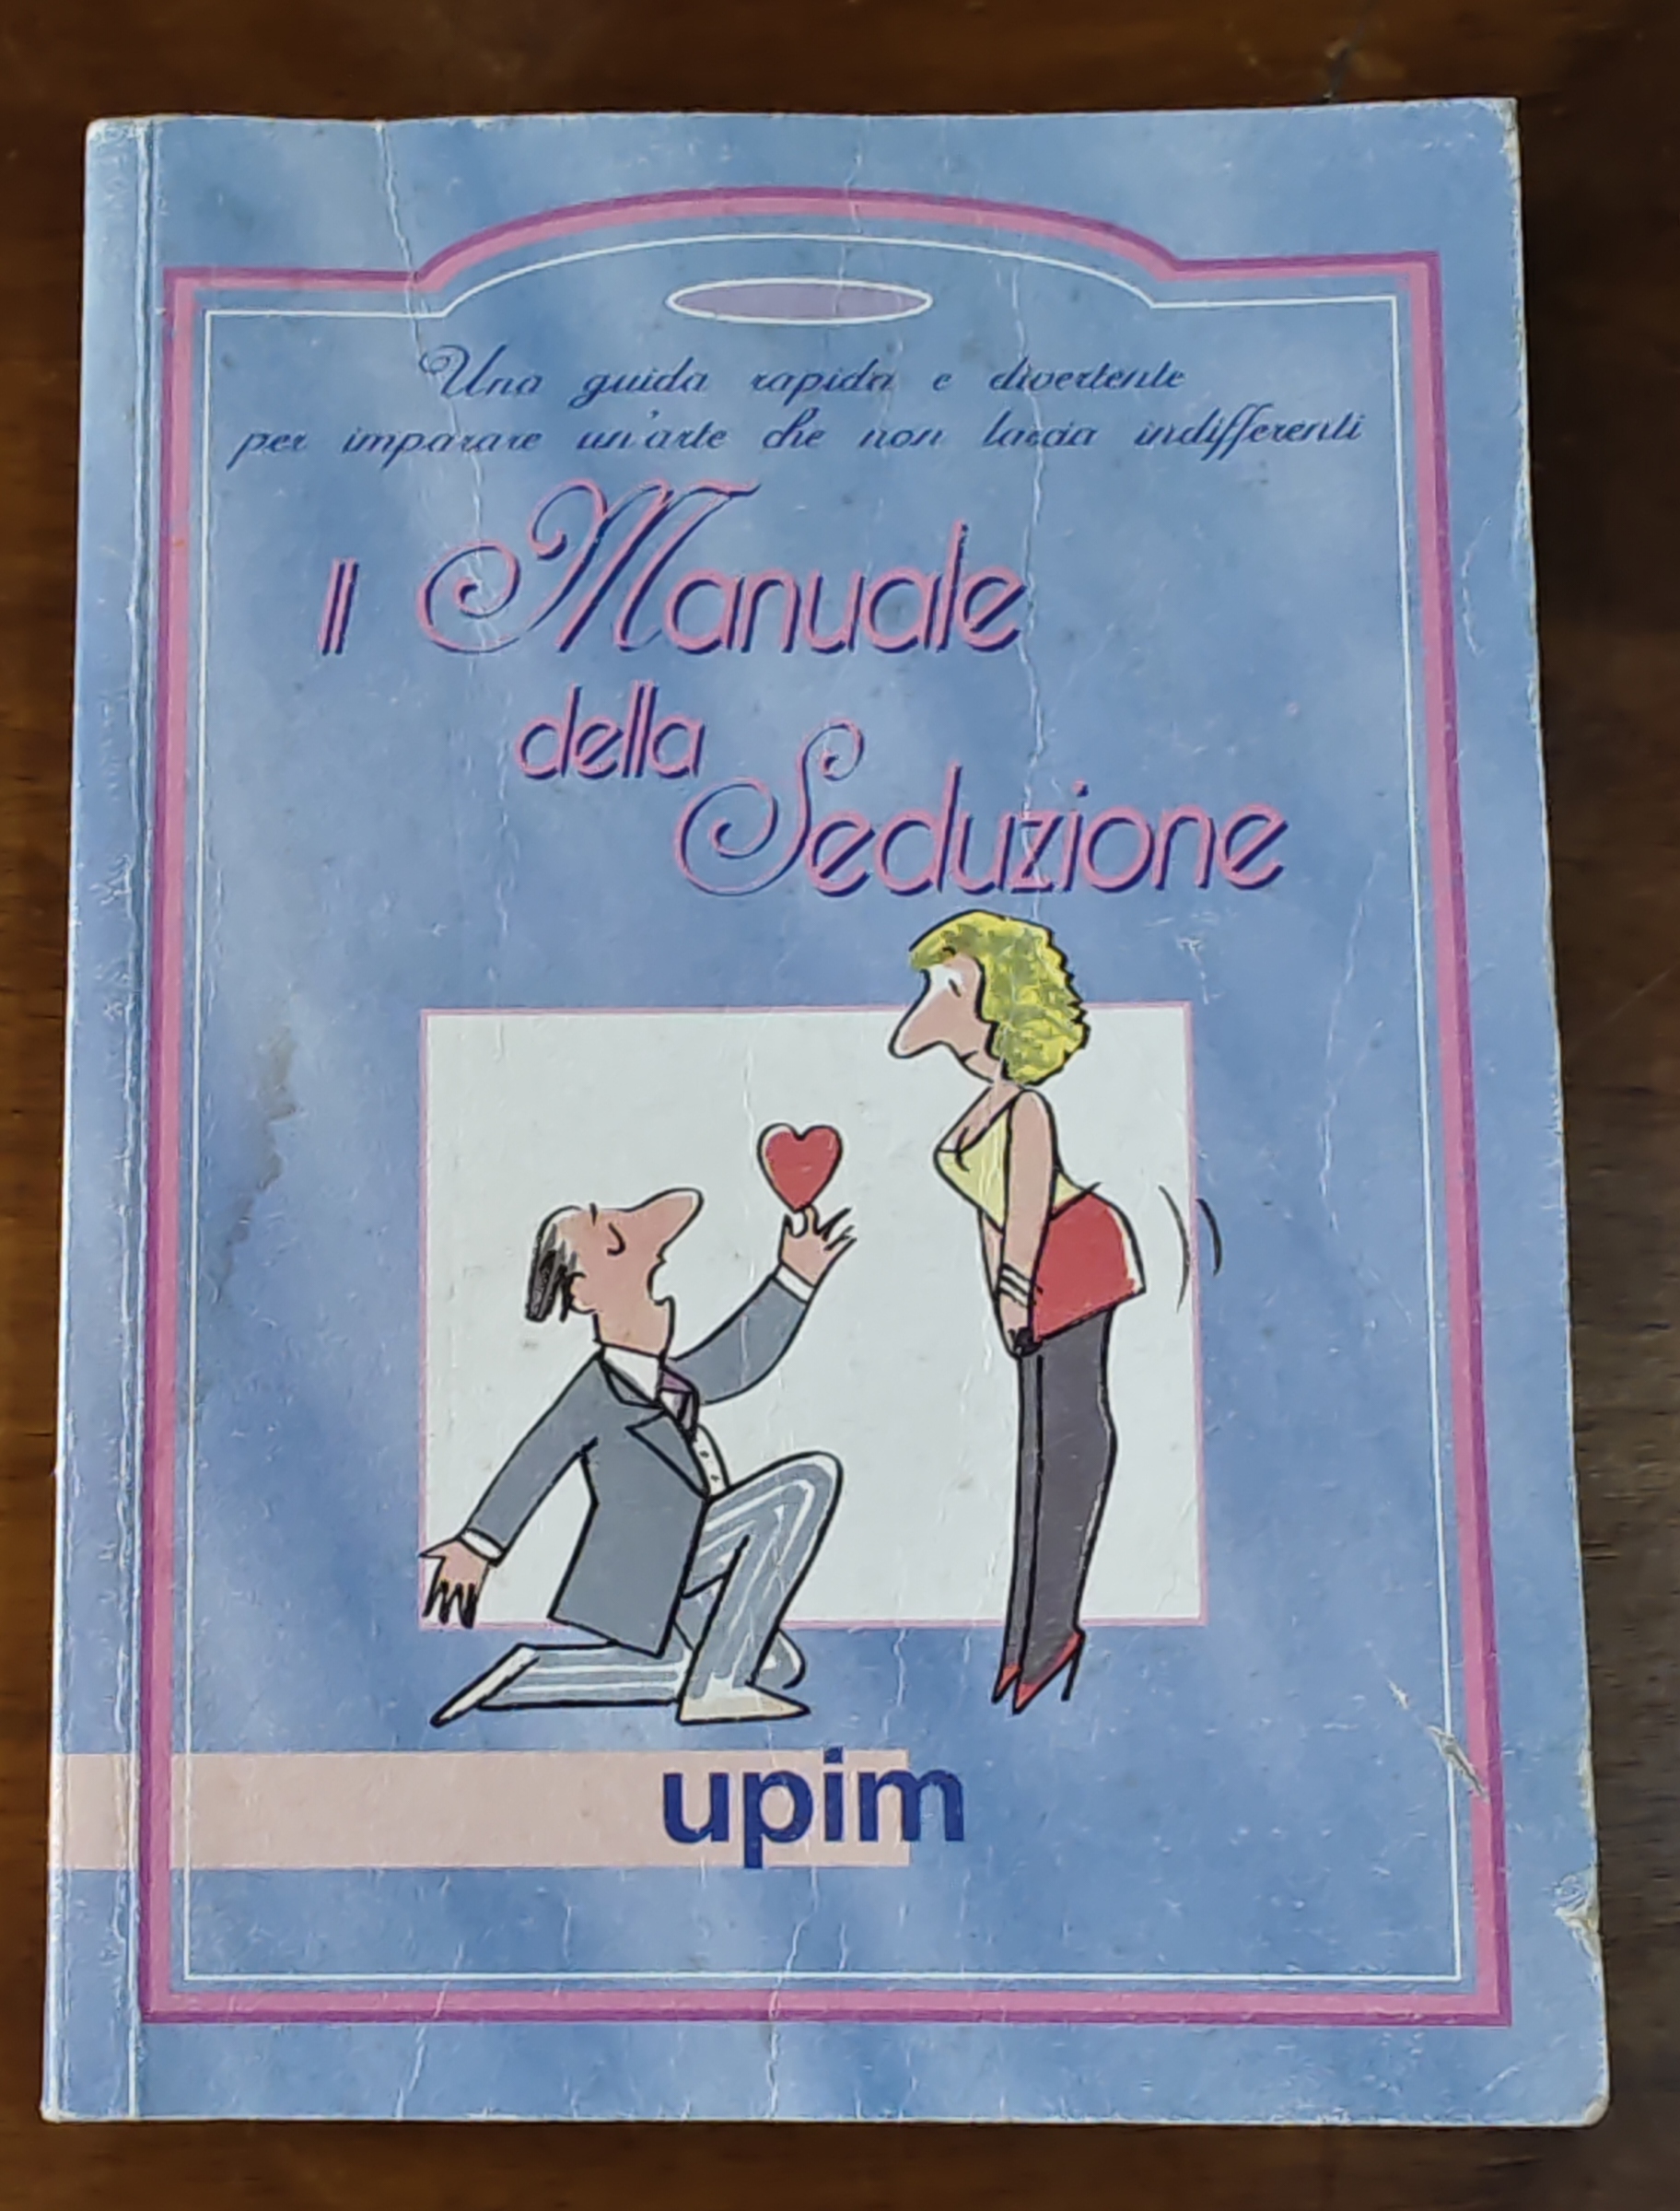 Forse non tutti sanno che la UPIM è stato anche un editore e ci sono libri col suo marchio: il caso de “Il manuale della seduzione” (1998)